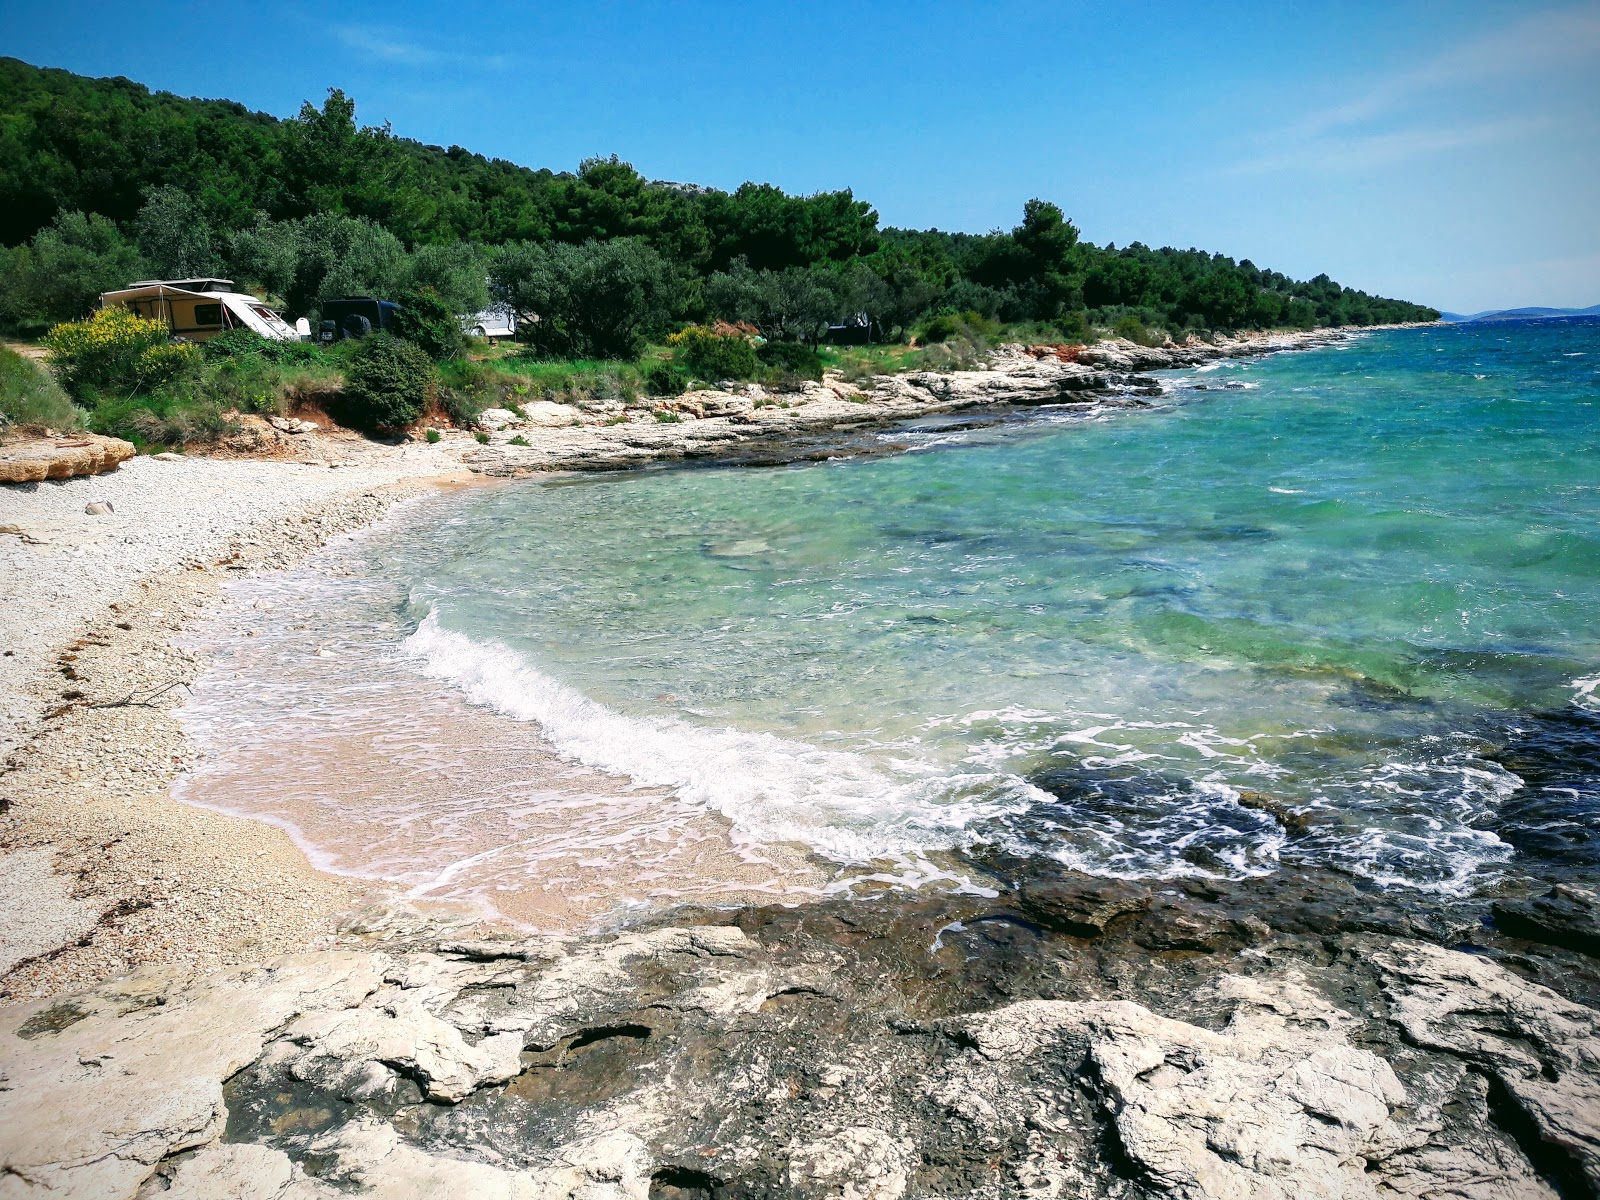 Photo de Kosirina beach - endroit populaire parmi les connaisseurs de la détente